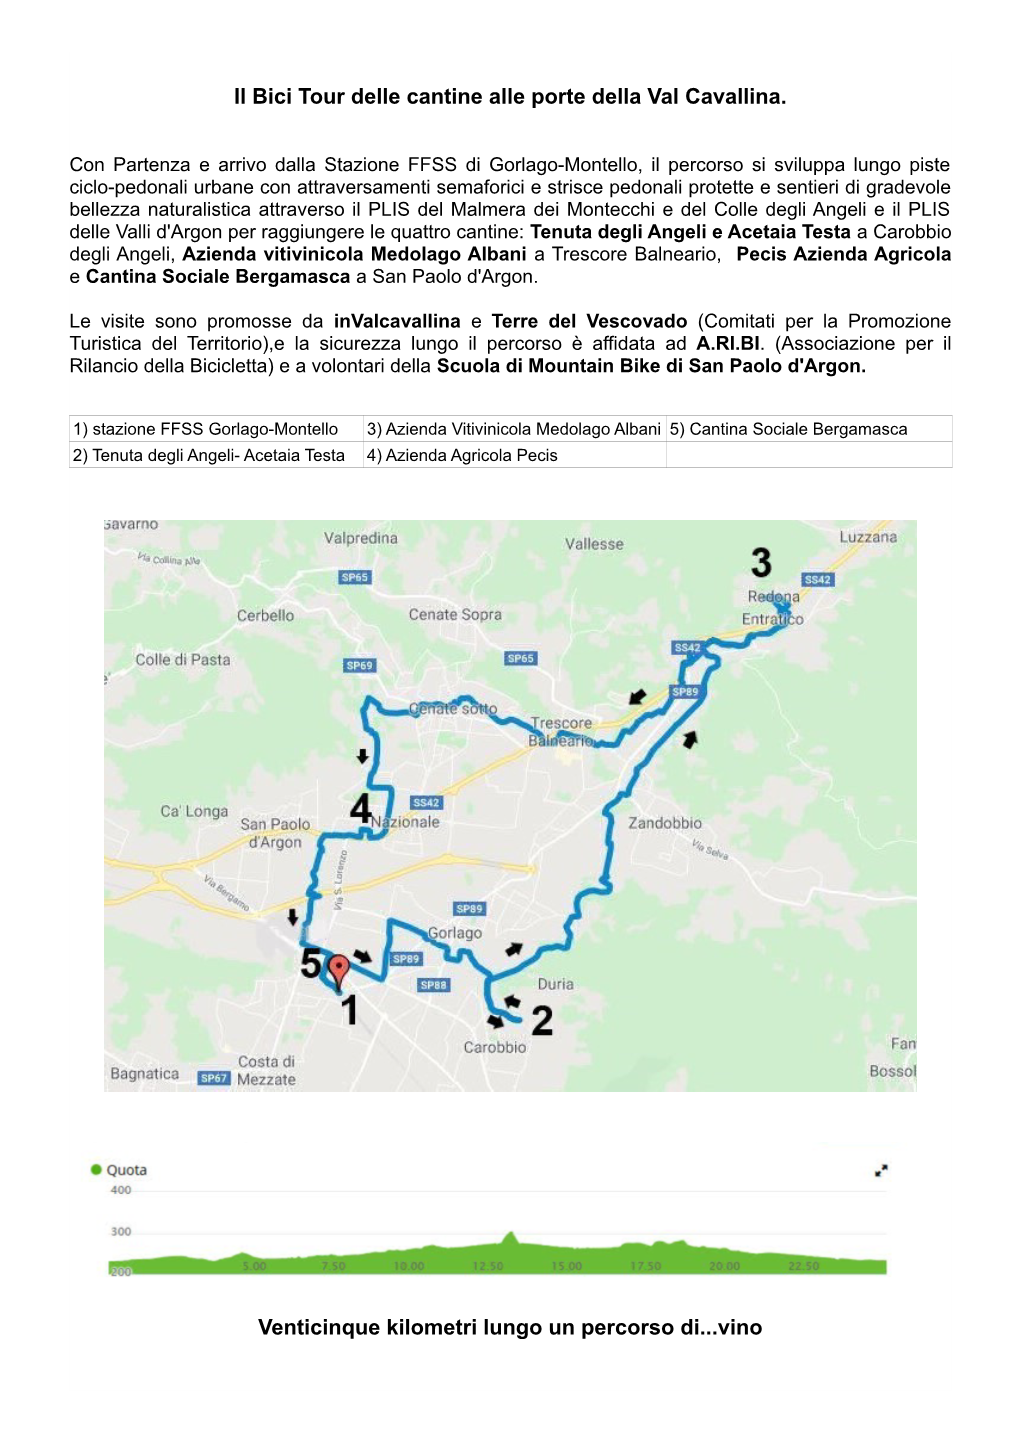 Il Bici Tour Delle Cantine Alle Porte Della Val Cavallina. Venticinque